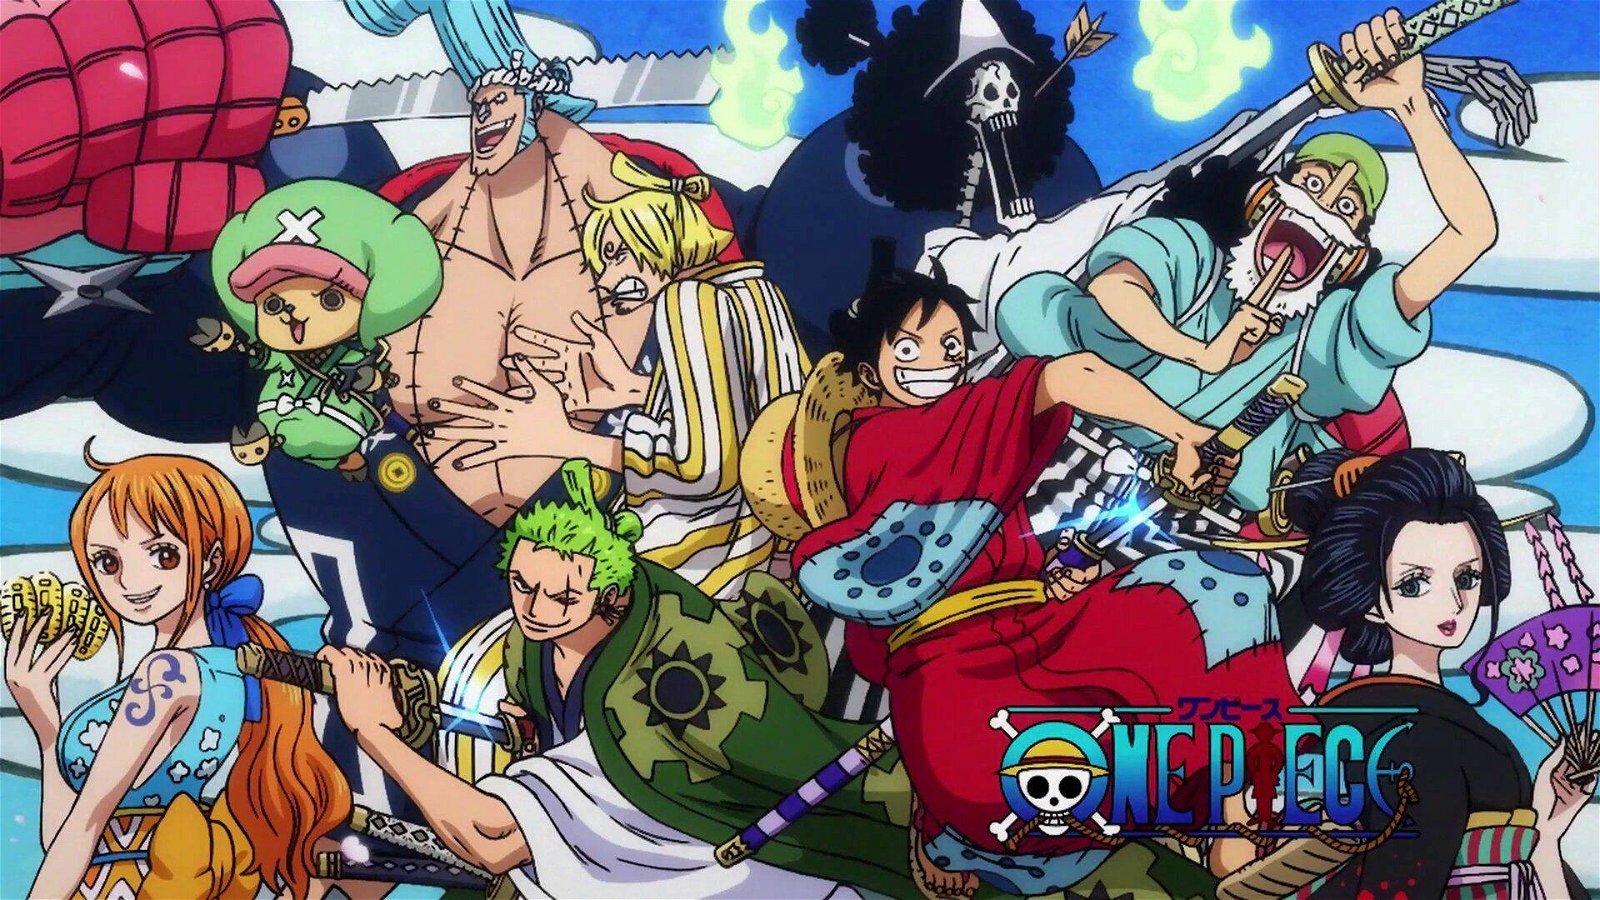 Immagine di One Piece 1000: confermata la data di uscita dell'episodio con key visual